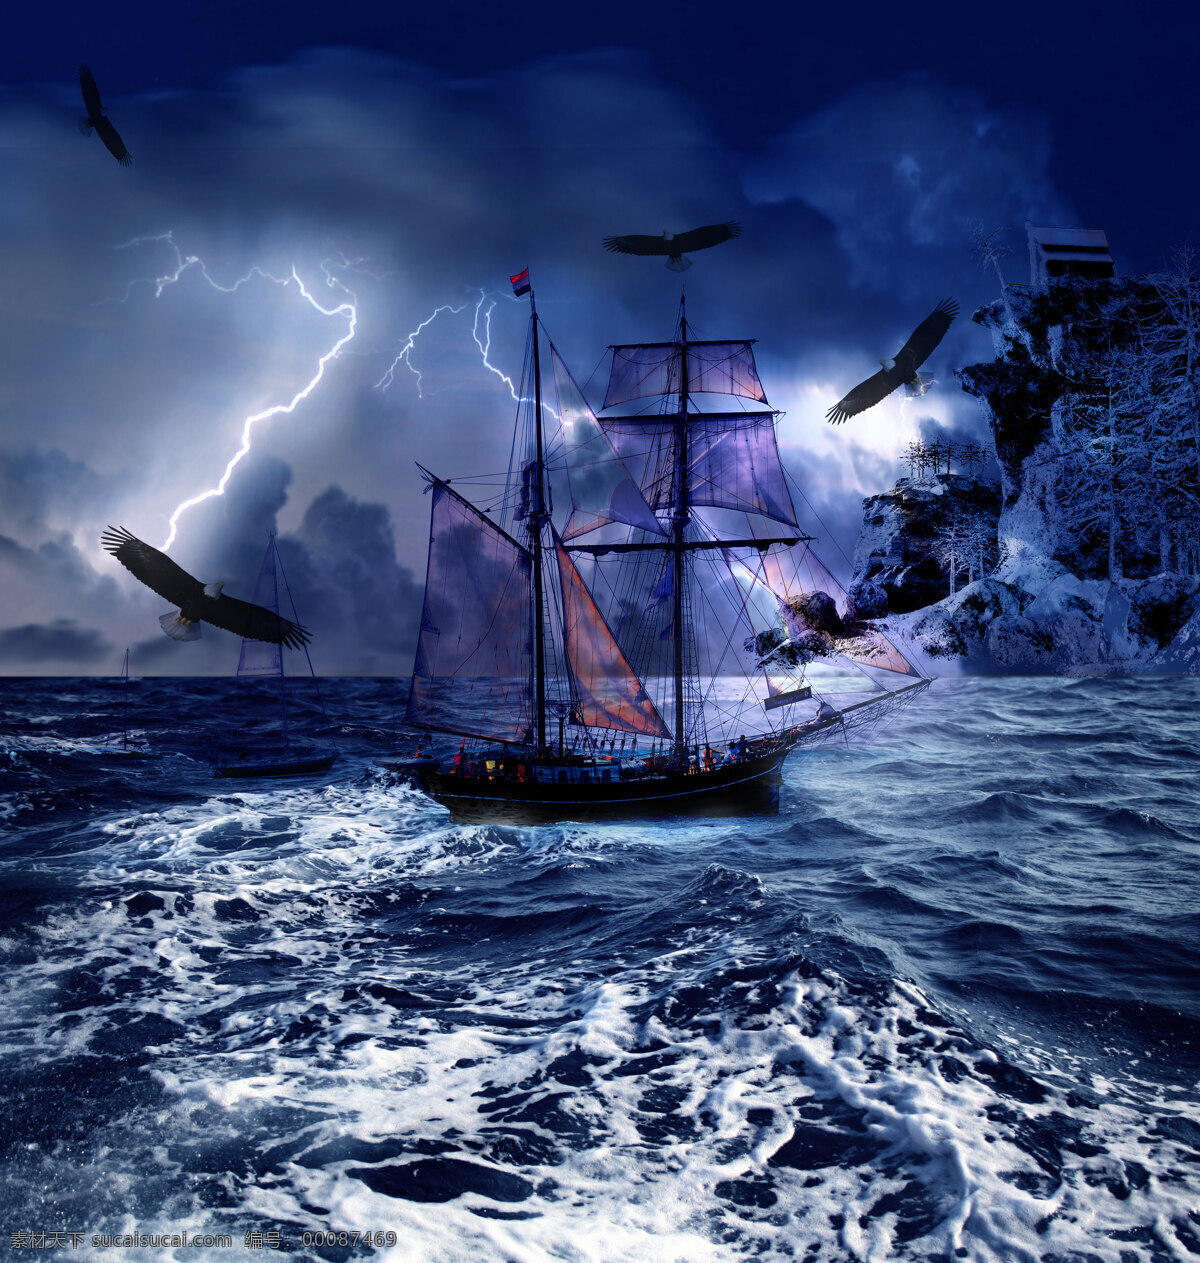 梦幻海景 海景 夜景 科幻 海啸 海鸥 船只 自然风光 自然景观